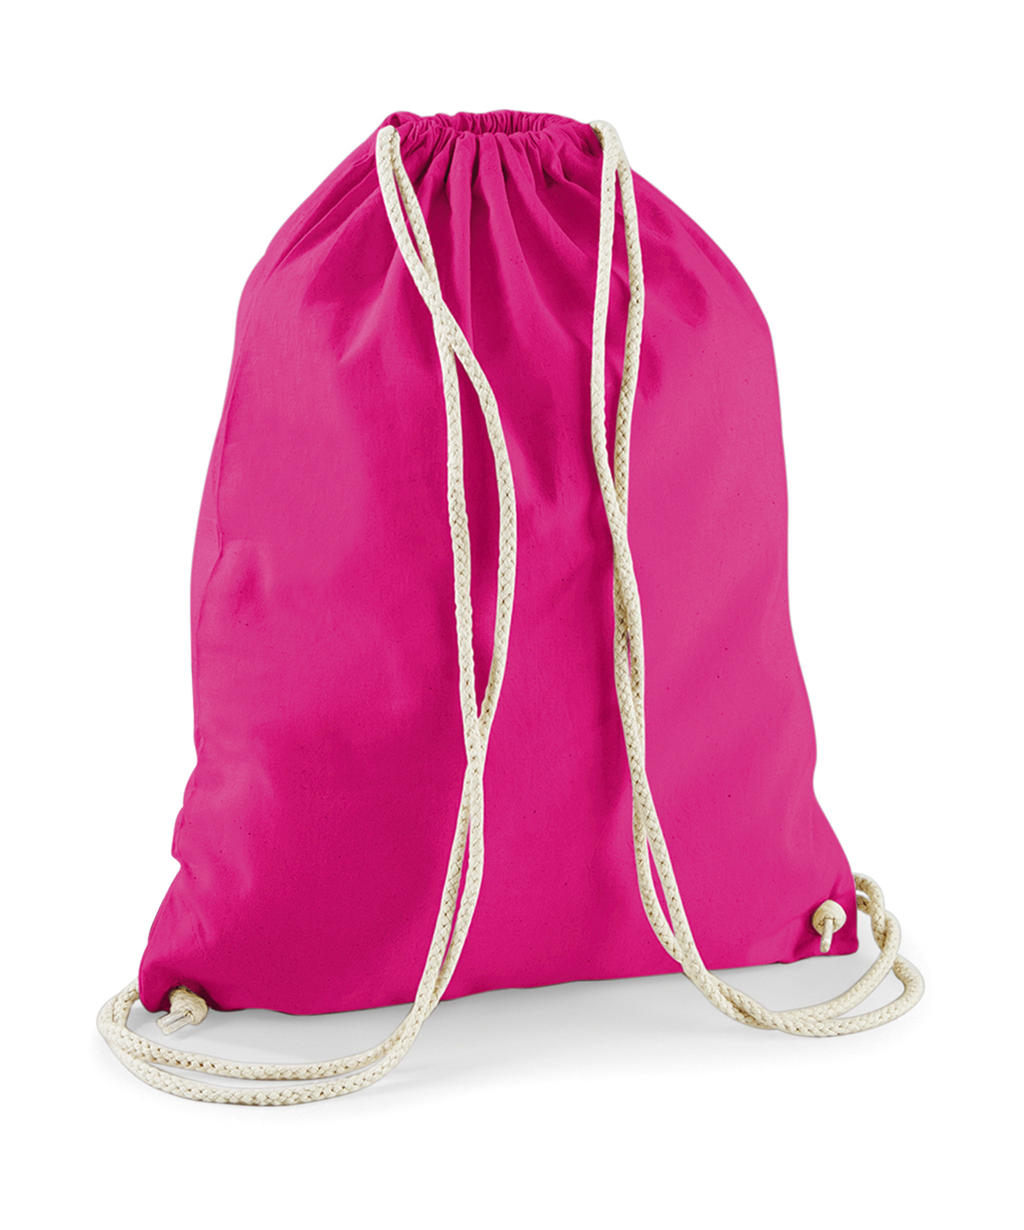 Розовый мешок в игре. Сумка мешок из хлопка. Розовый мешок. Розовый спортивный мешок. Рюкзак мешок из полиамида женский легкий.